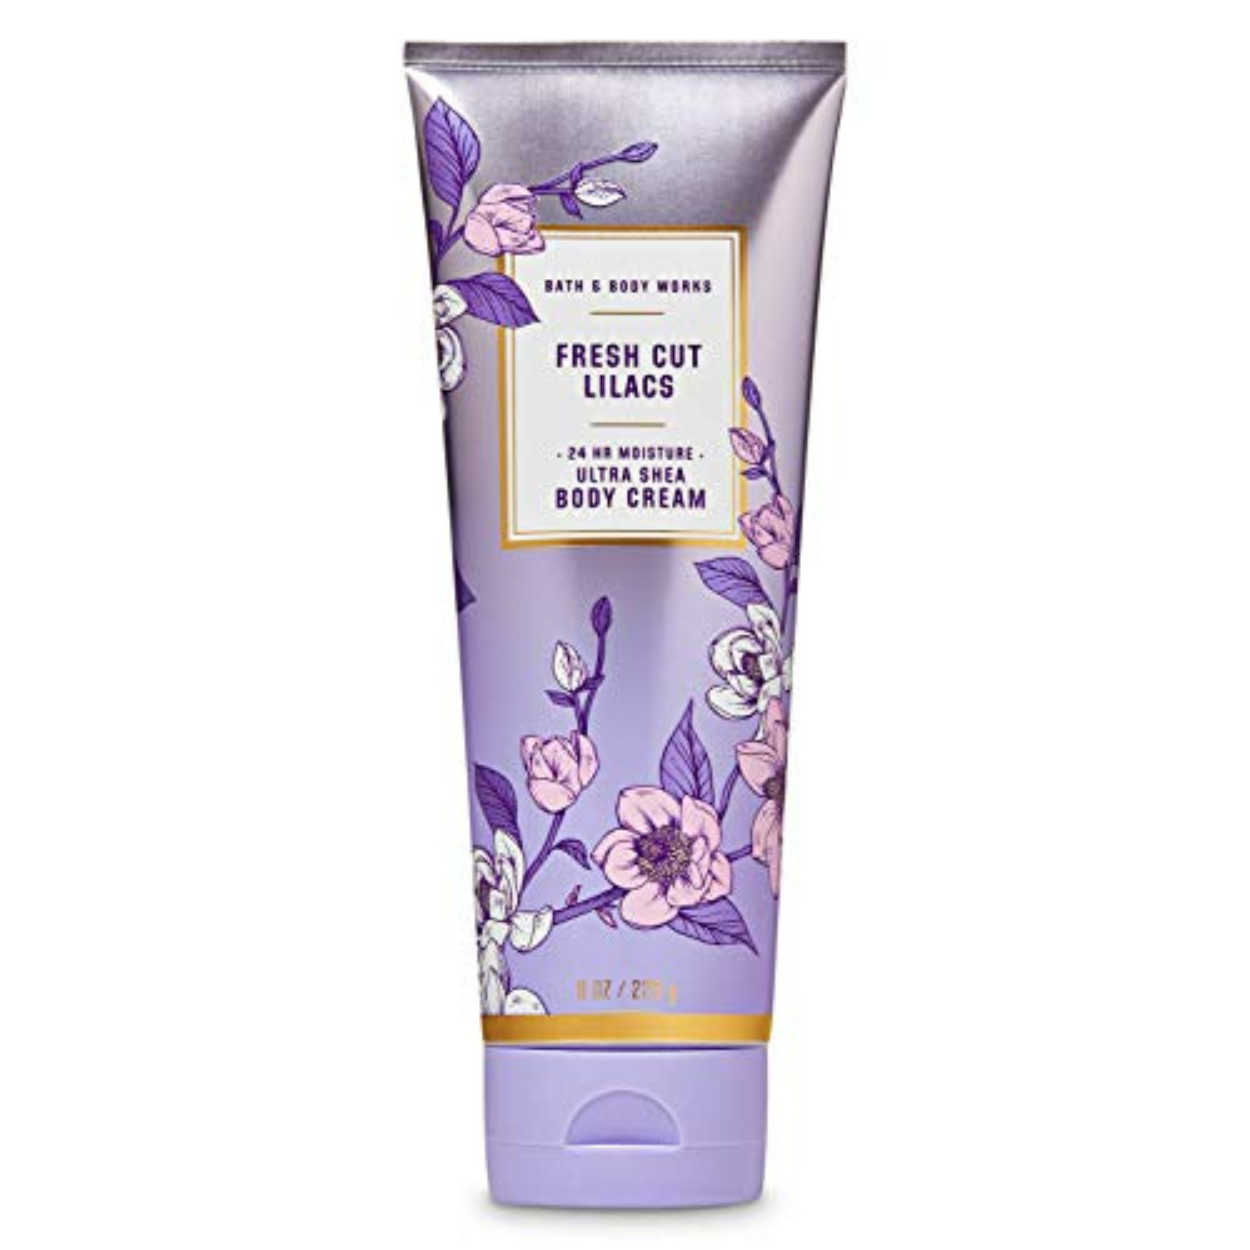 Lotion | Fresh Cut Lilacs Ultra Shea Body Cream | Bath and Body Works 